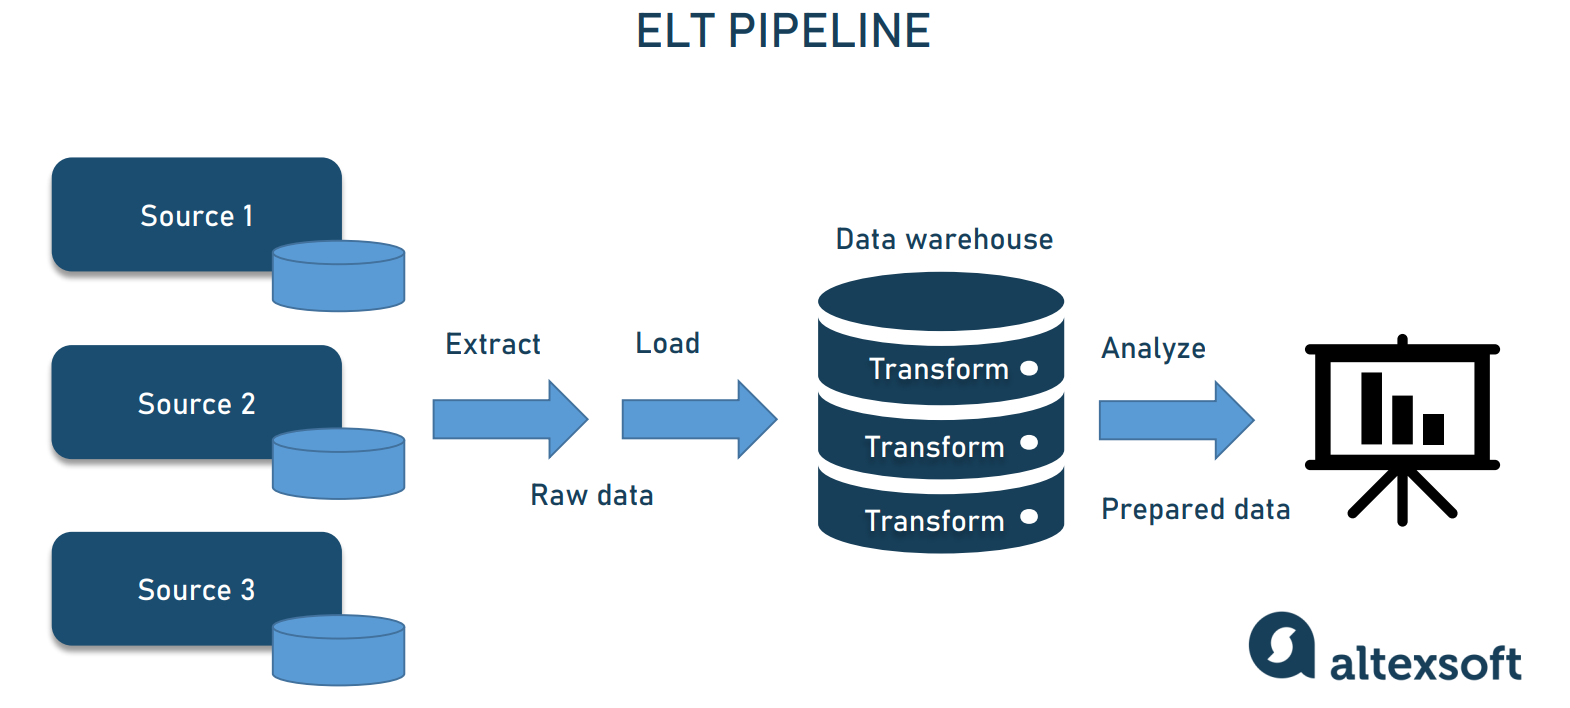 elt_pipeline